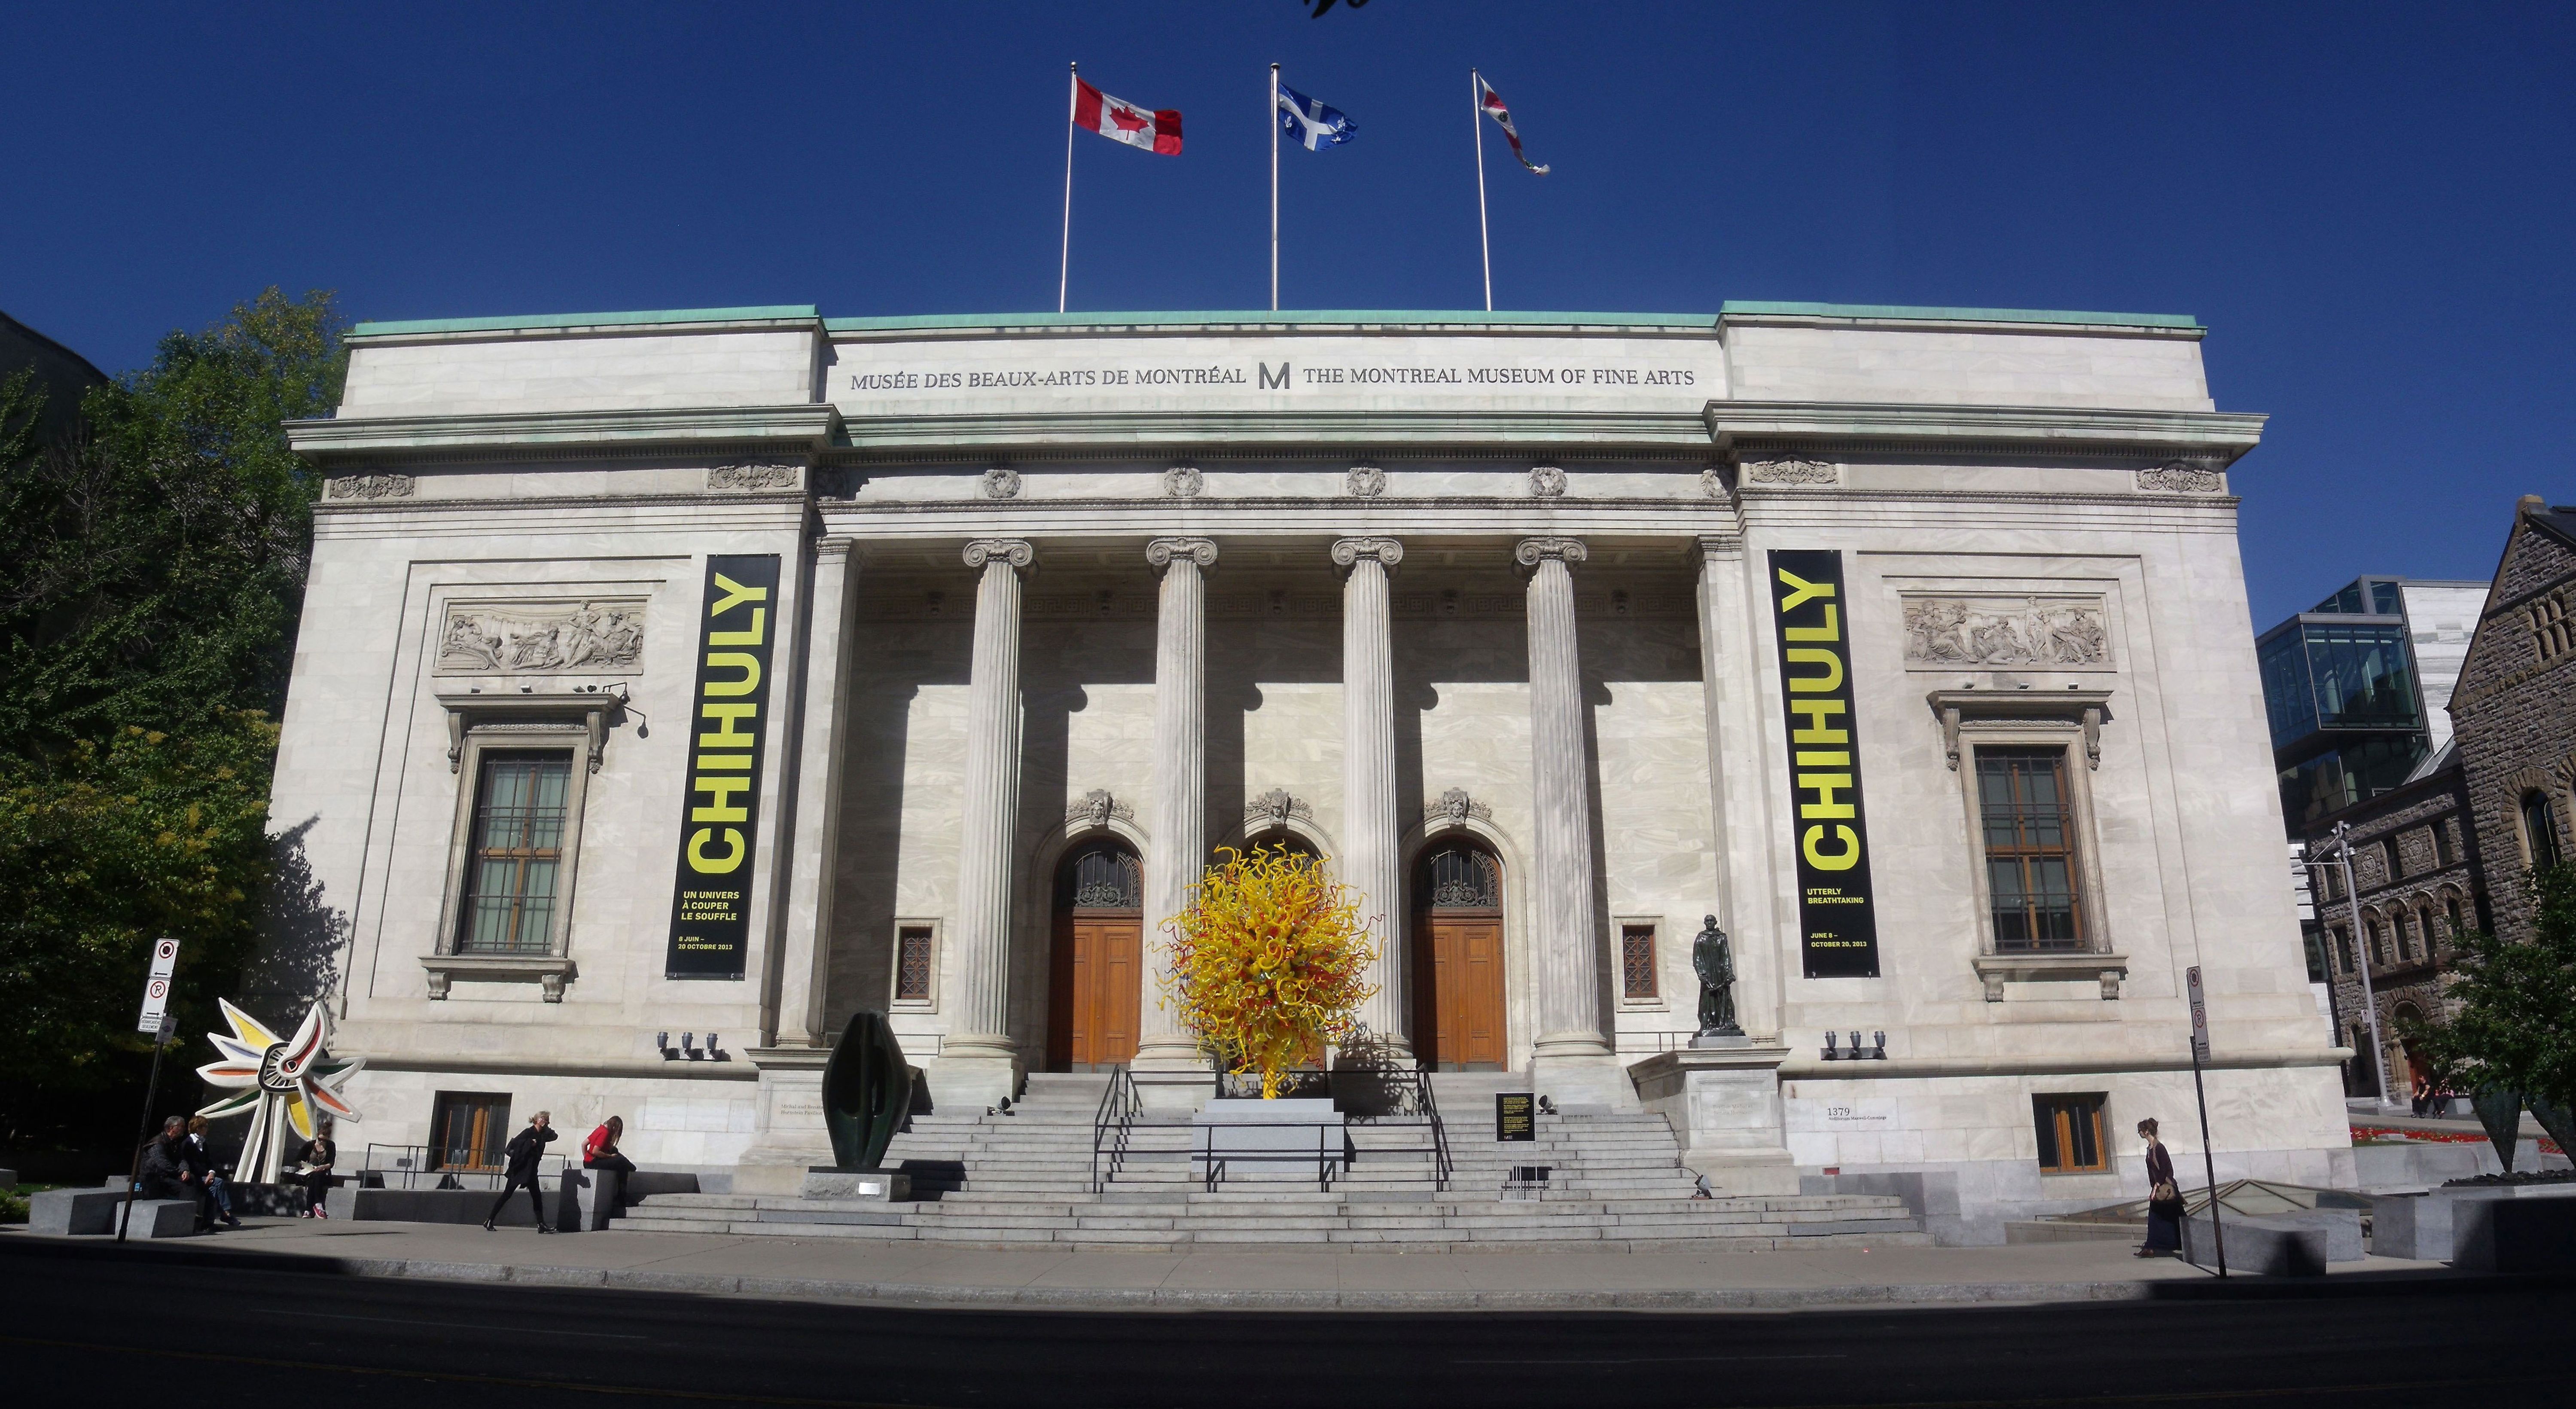 Musée des beaux-arts de Montréal